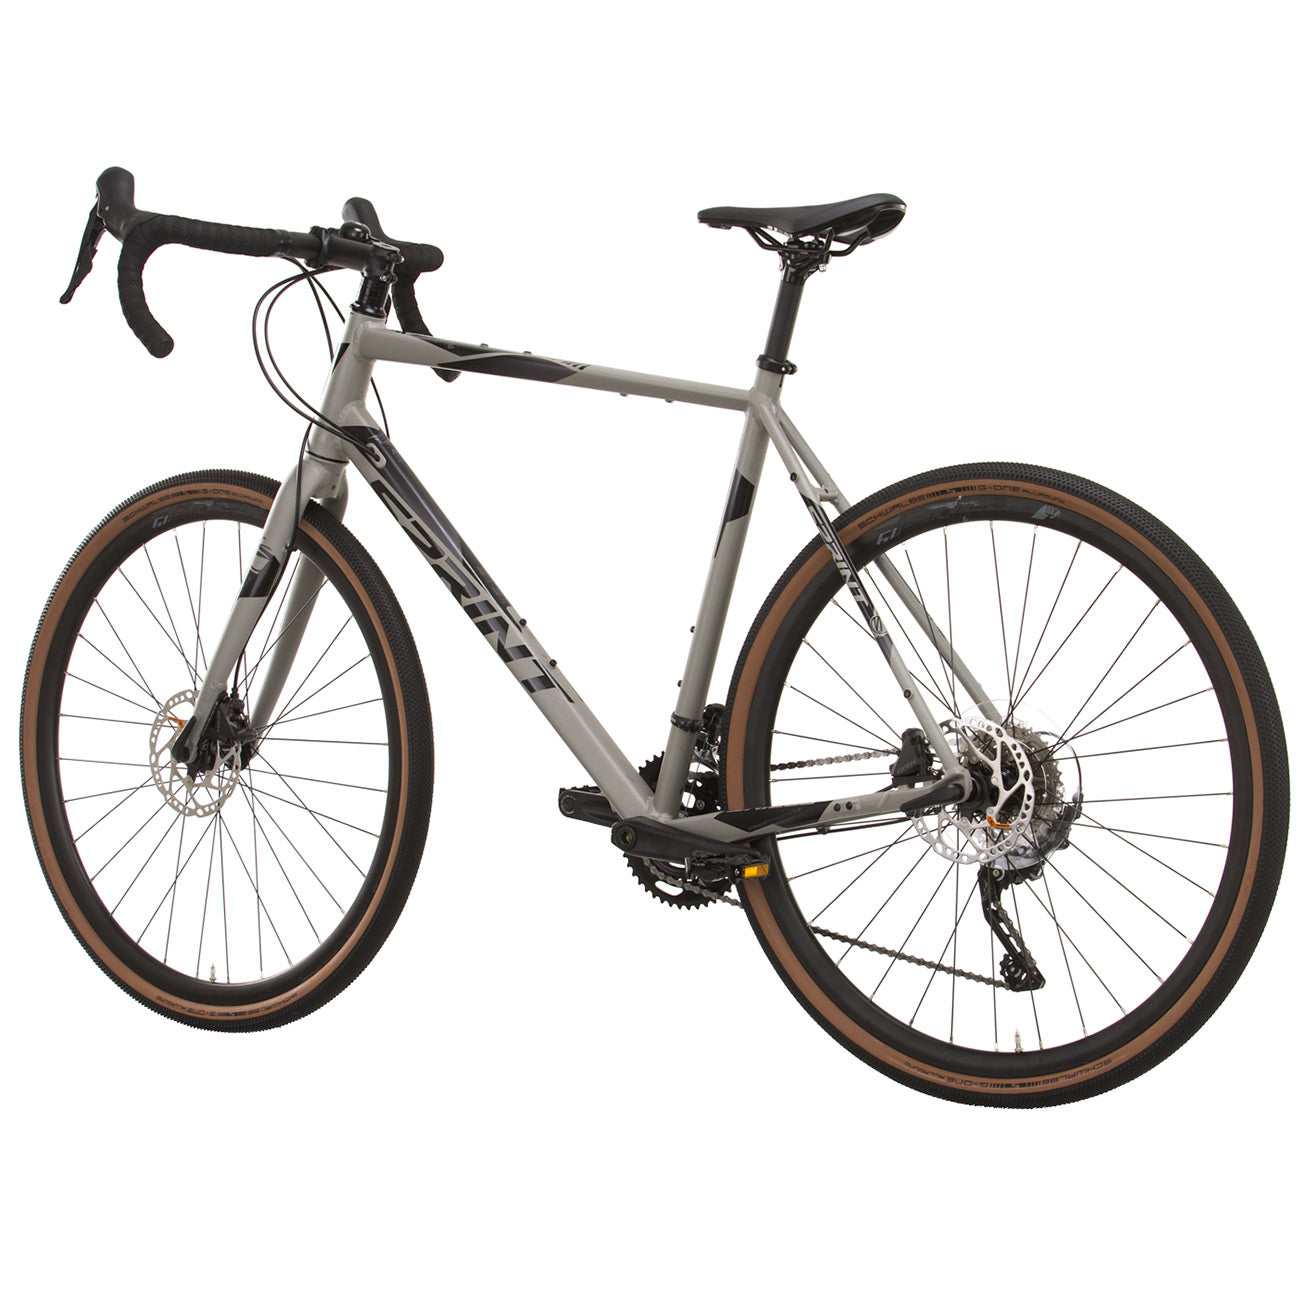 herren-gravel-bike-fahrrad-whister-shimano-grx-400-2-9-gang-52-56-cm-schwarz-grau-7